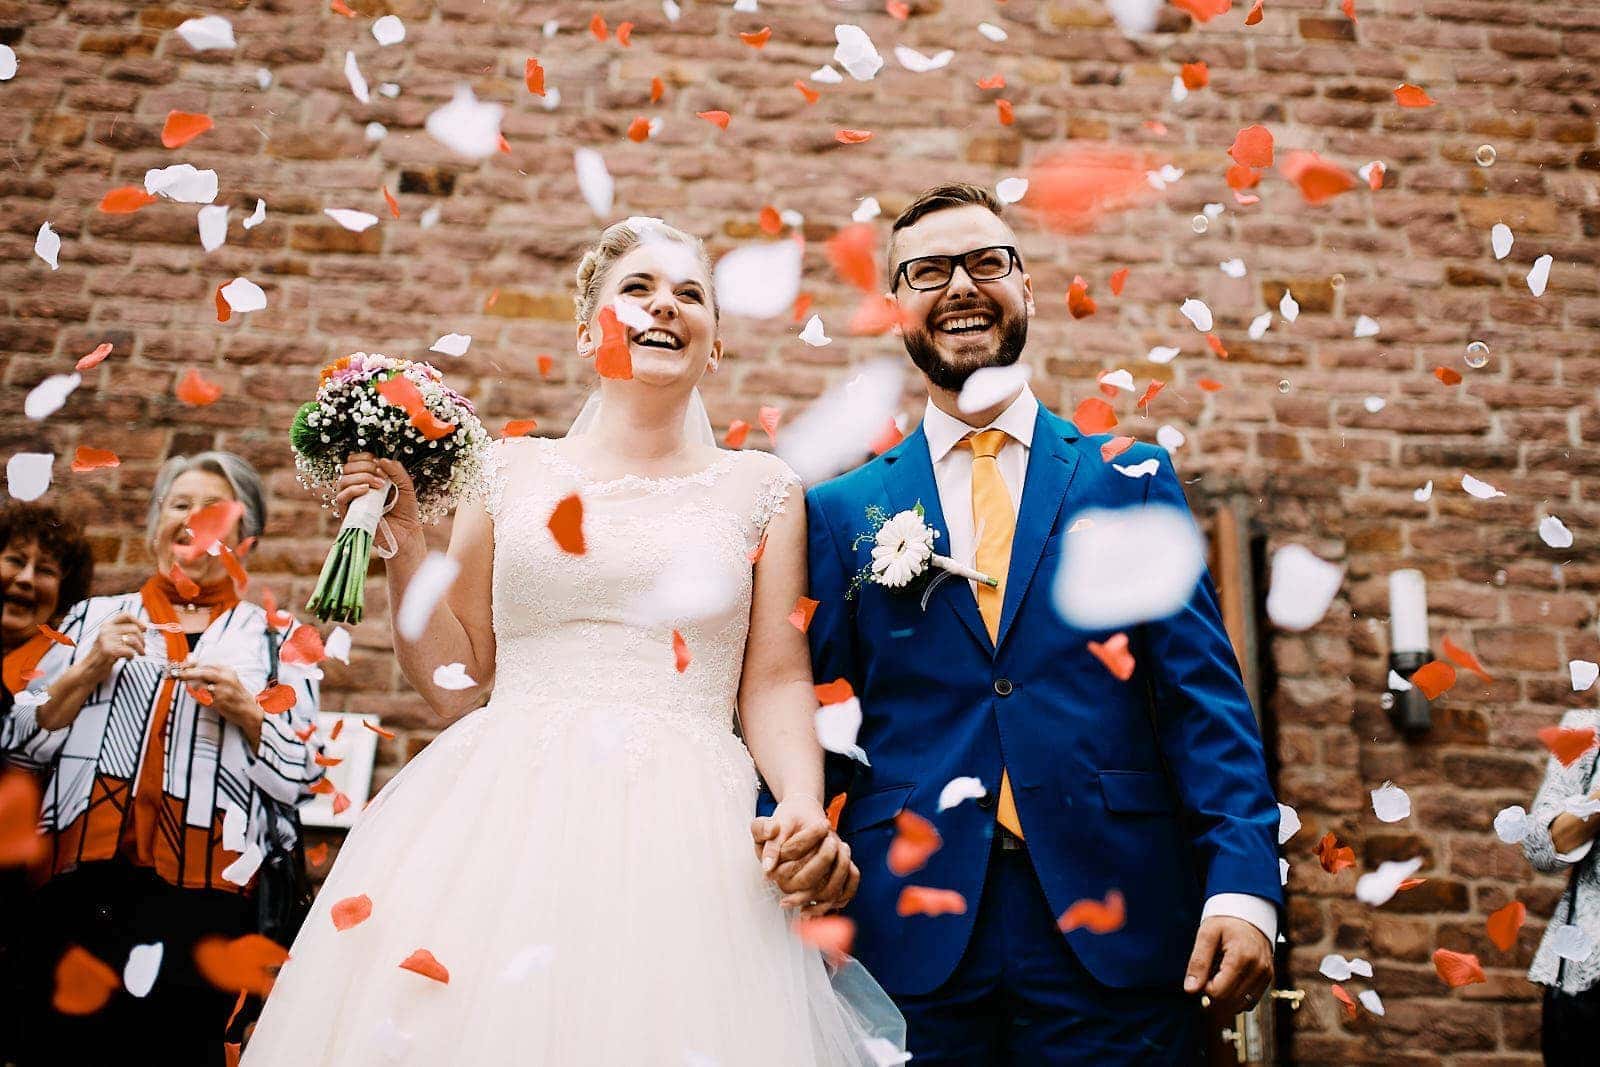 Ein frisch verheiratetes Brautpaar verlässt lachend den Trauraum im Kloster Landscheid und wird von der Hochzeitsgesellschaft mit Blumen beworfen.